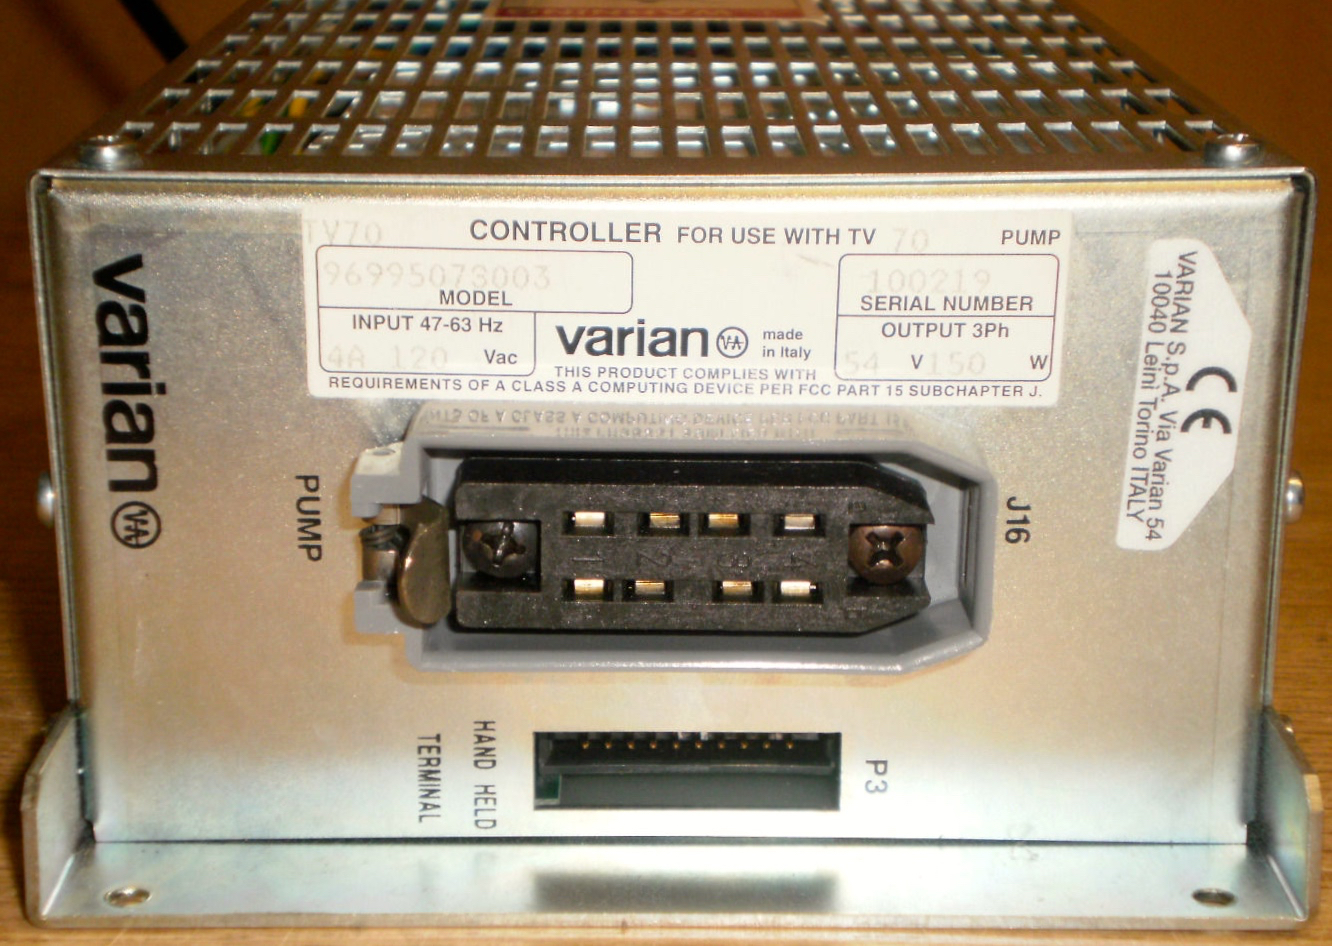 V71 controller